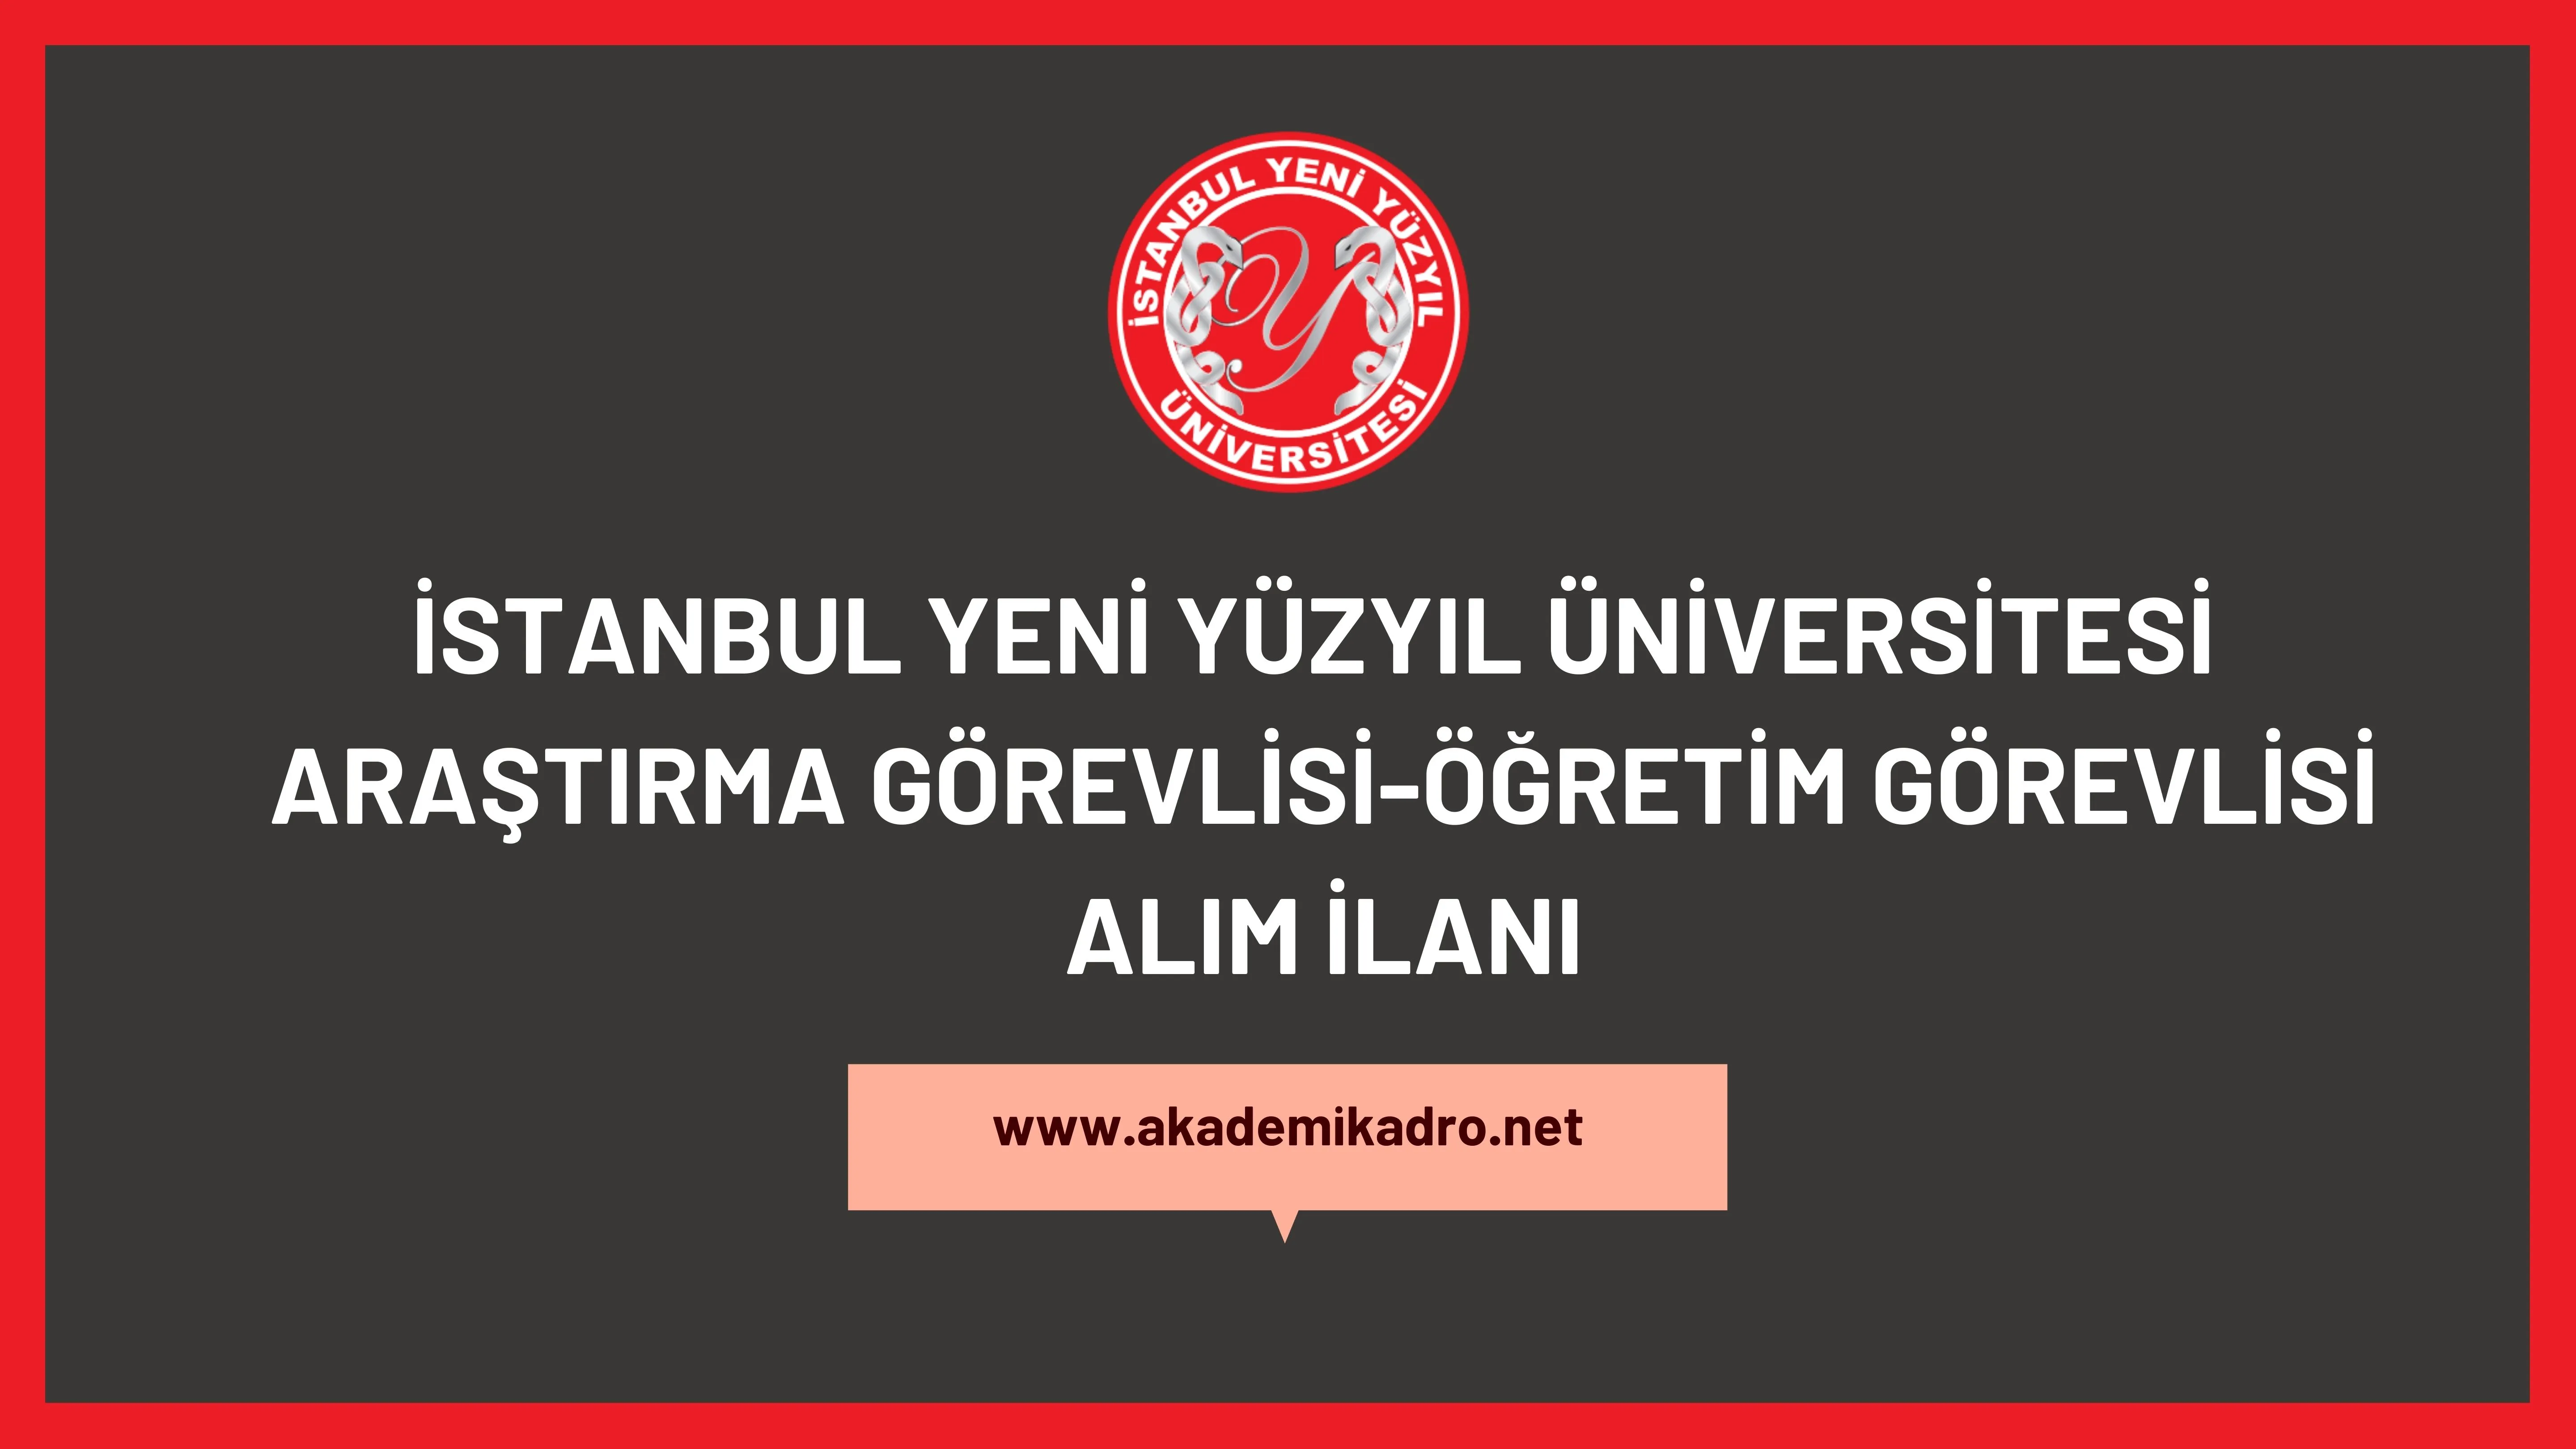 İstanbul Yeni Yüzyıl Üniversitesi 3 Araştırma görevlisi ve 5 Öğretim görevlisi alacak. Son başvuru tarihi 17 Kasım 2022.